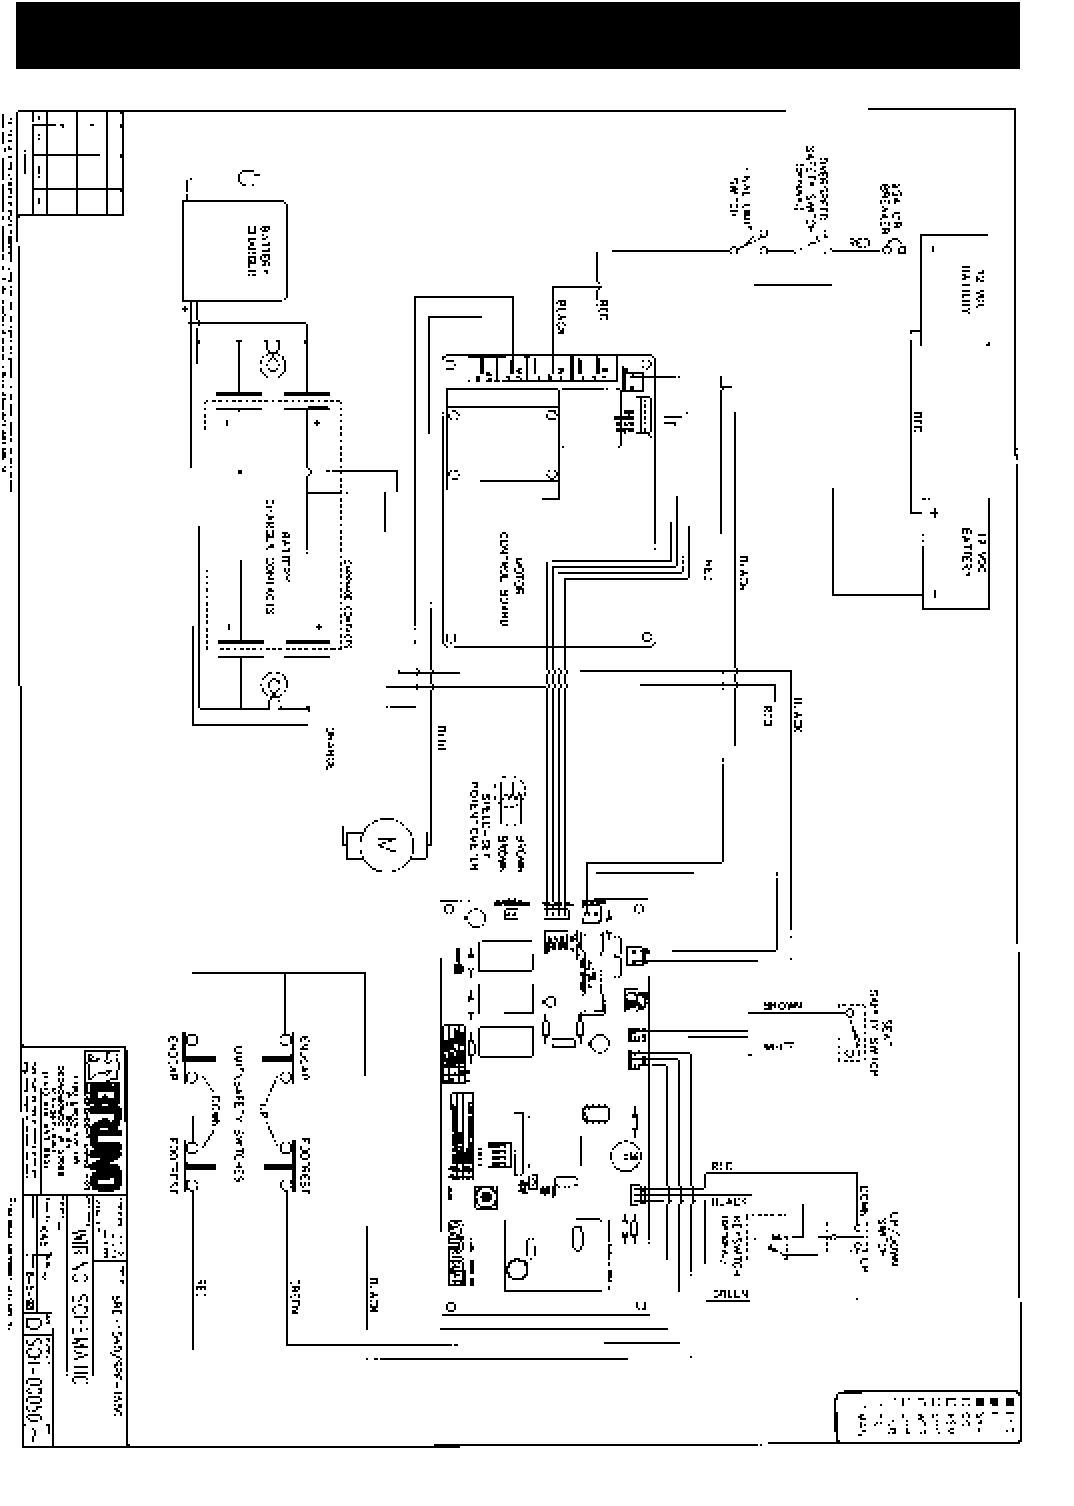 bruno asl-325 lift wiring diagram